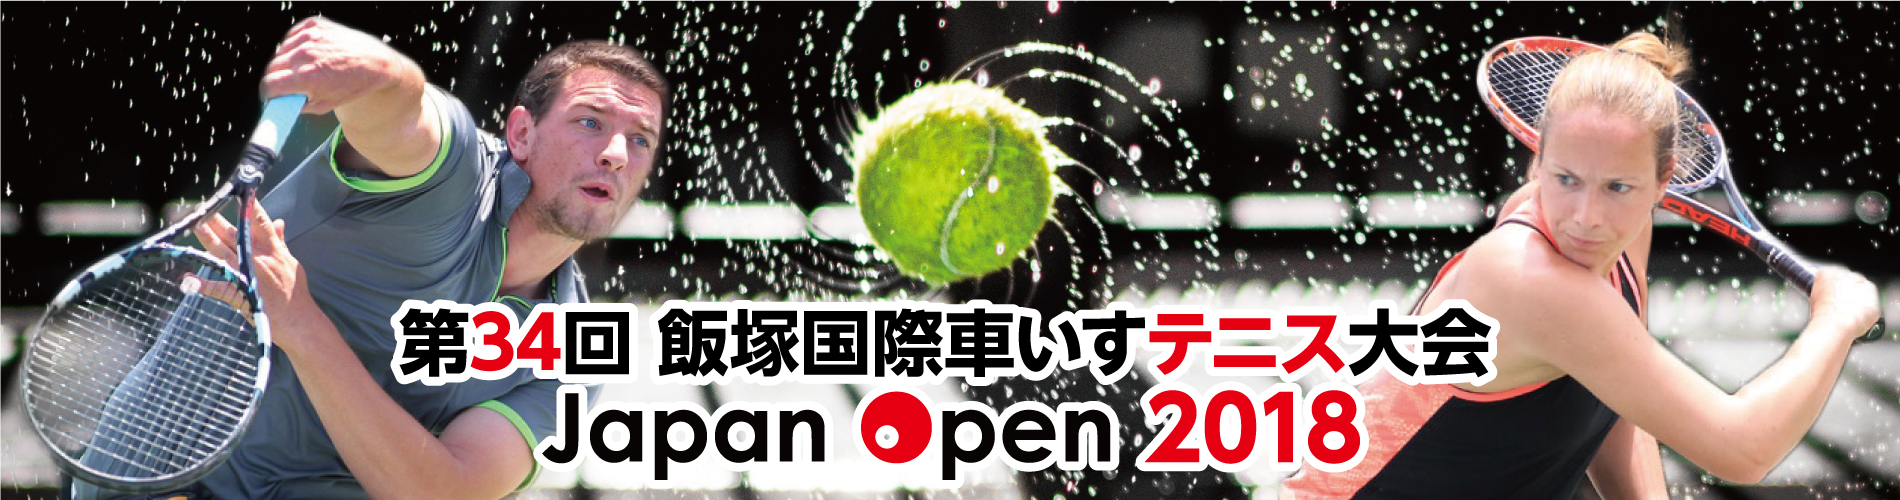 第34回飯塚国際車いすテニス大会JapanOpen2018_トップ_スライド用